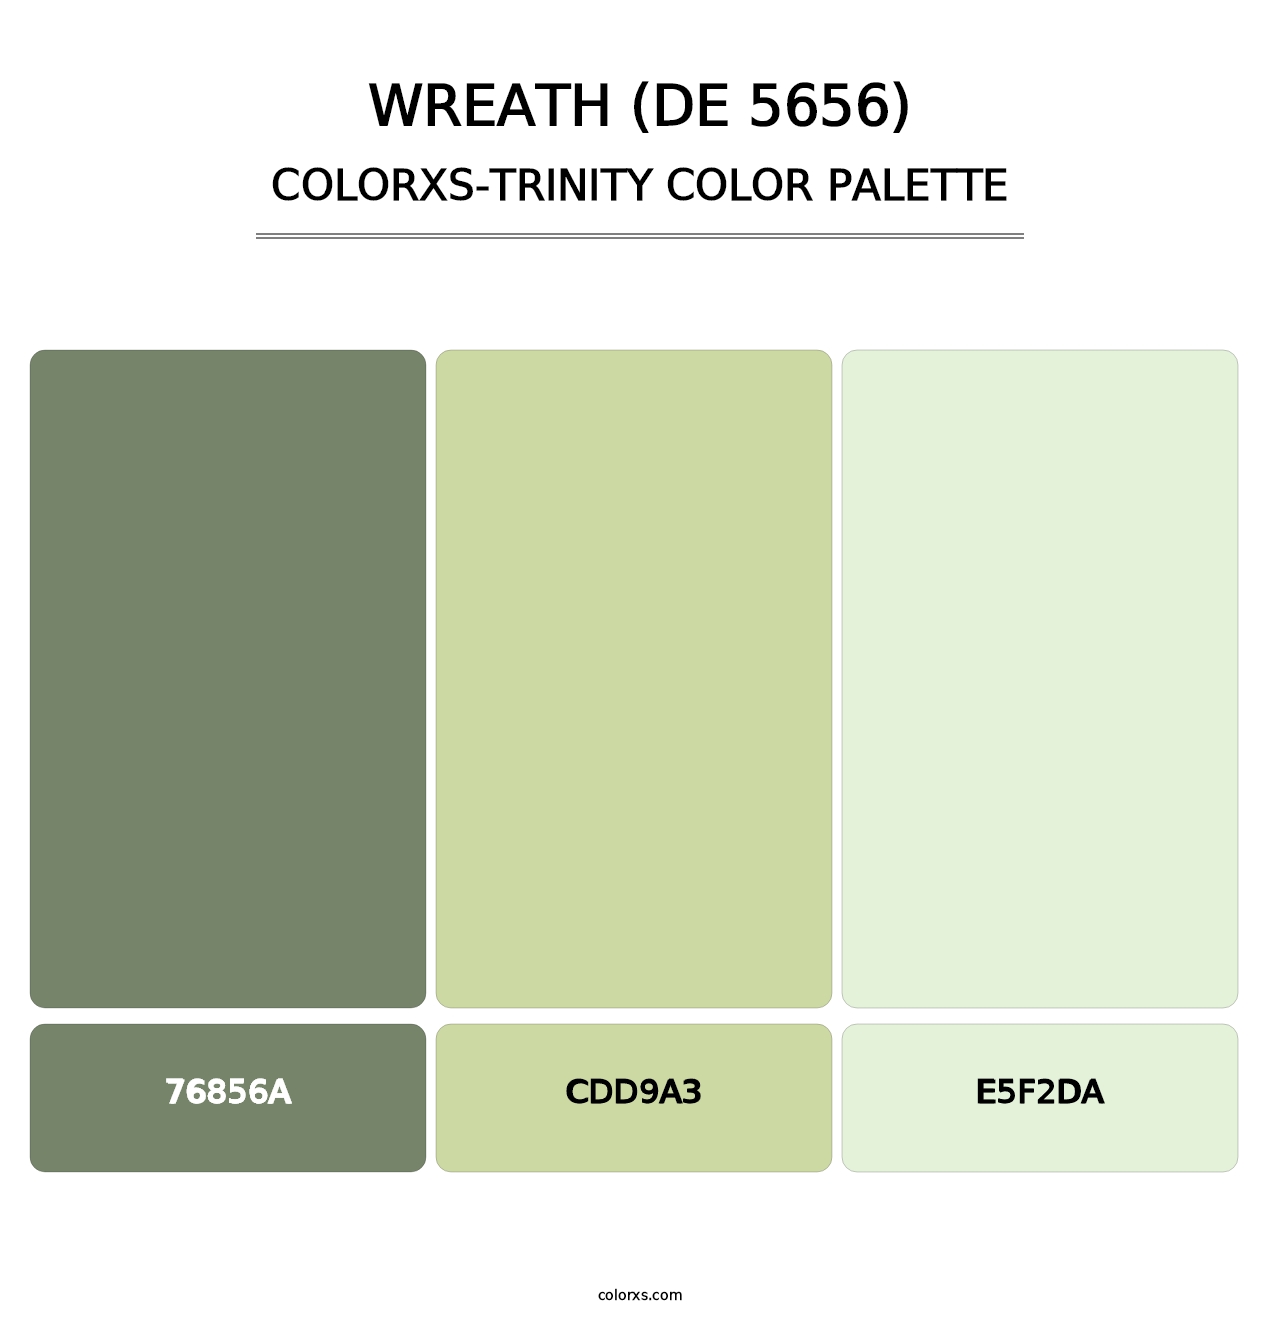 Wreath (DE 5656) - Colorxs Trinity Palette